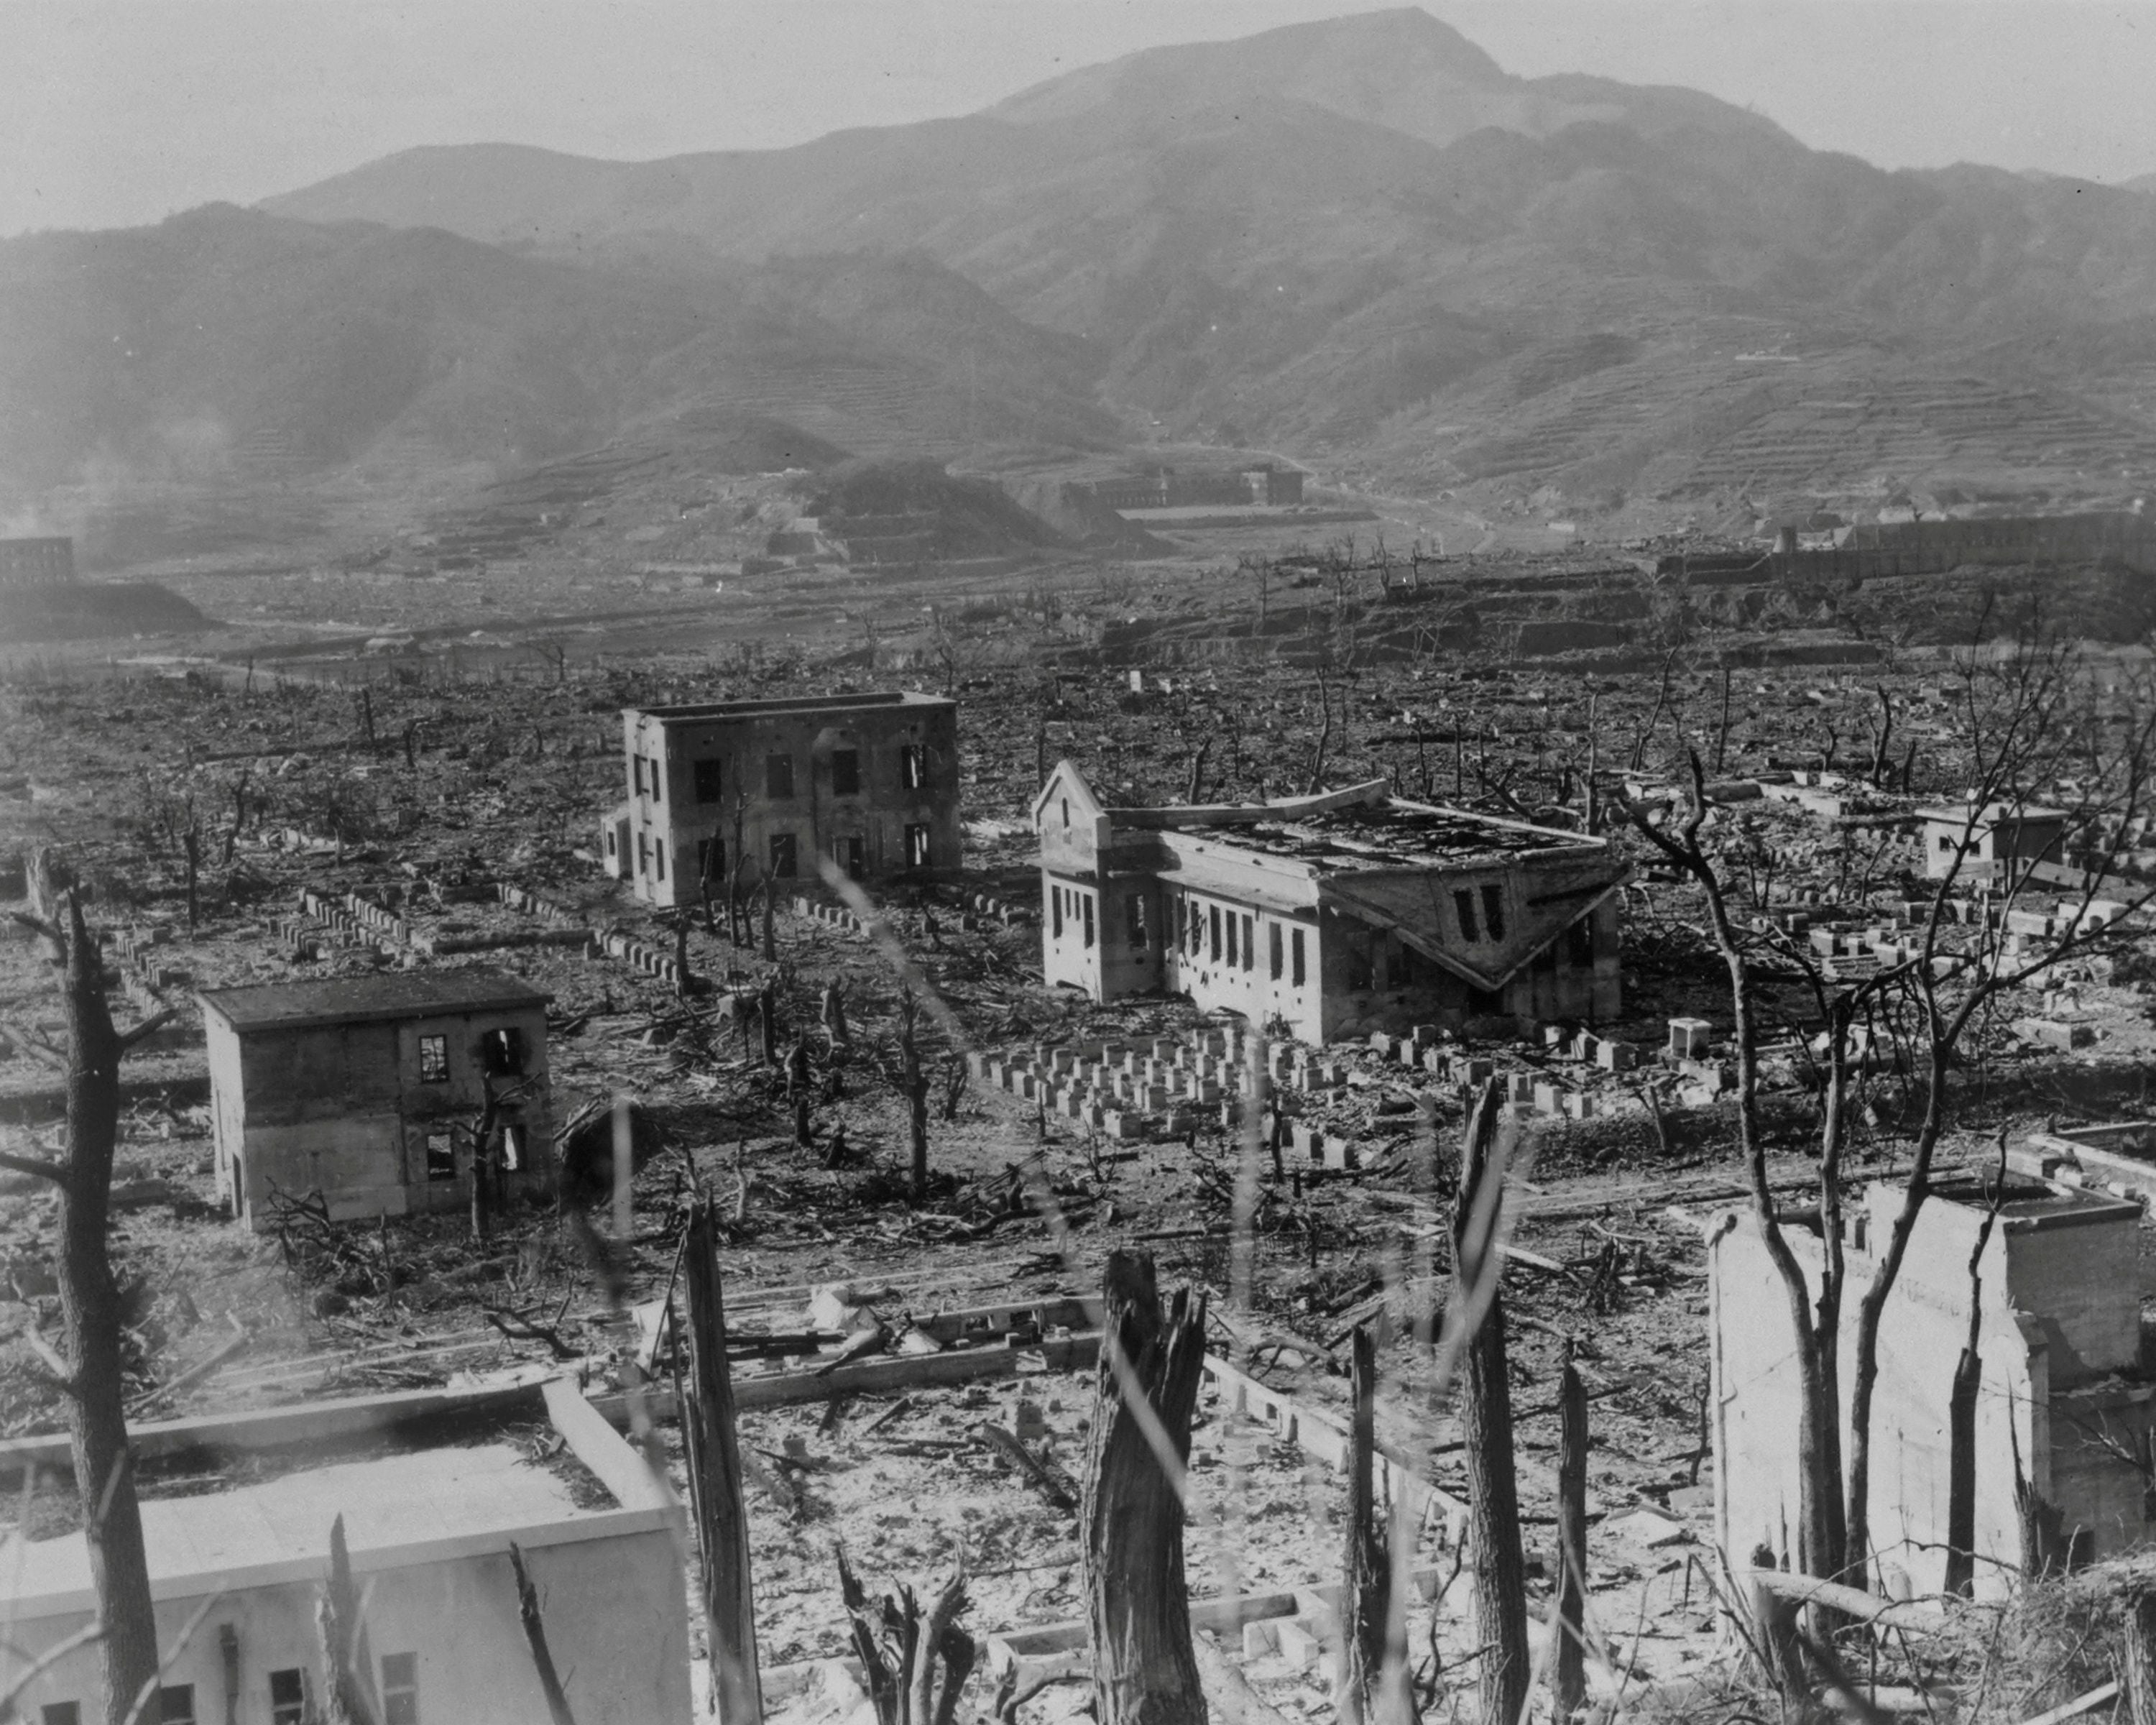 La devastación que dejó la bomba atómica sobre Nagasaki. Esa explosión y otra similar en Hiroshima, además de la declaración de guerra de la Unión Soviética, disuadieron a Japón para rendirse, aunque muchos querían continuar peleando hasta la extinción de la nación (REUTERS)